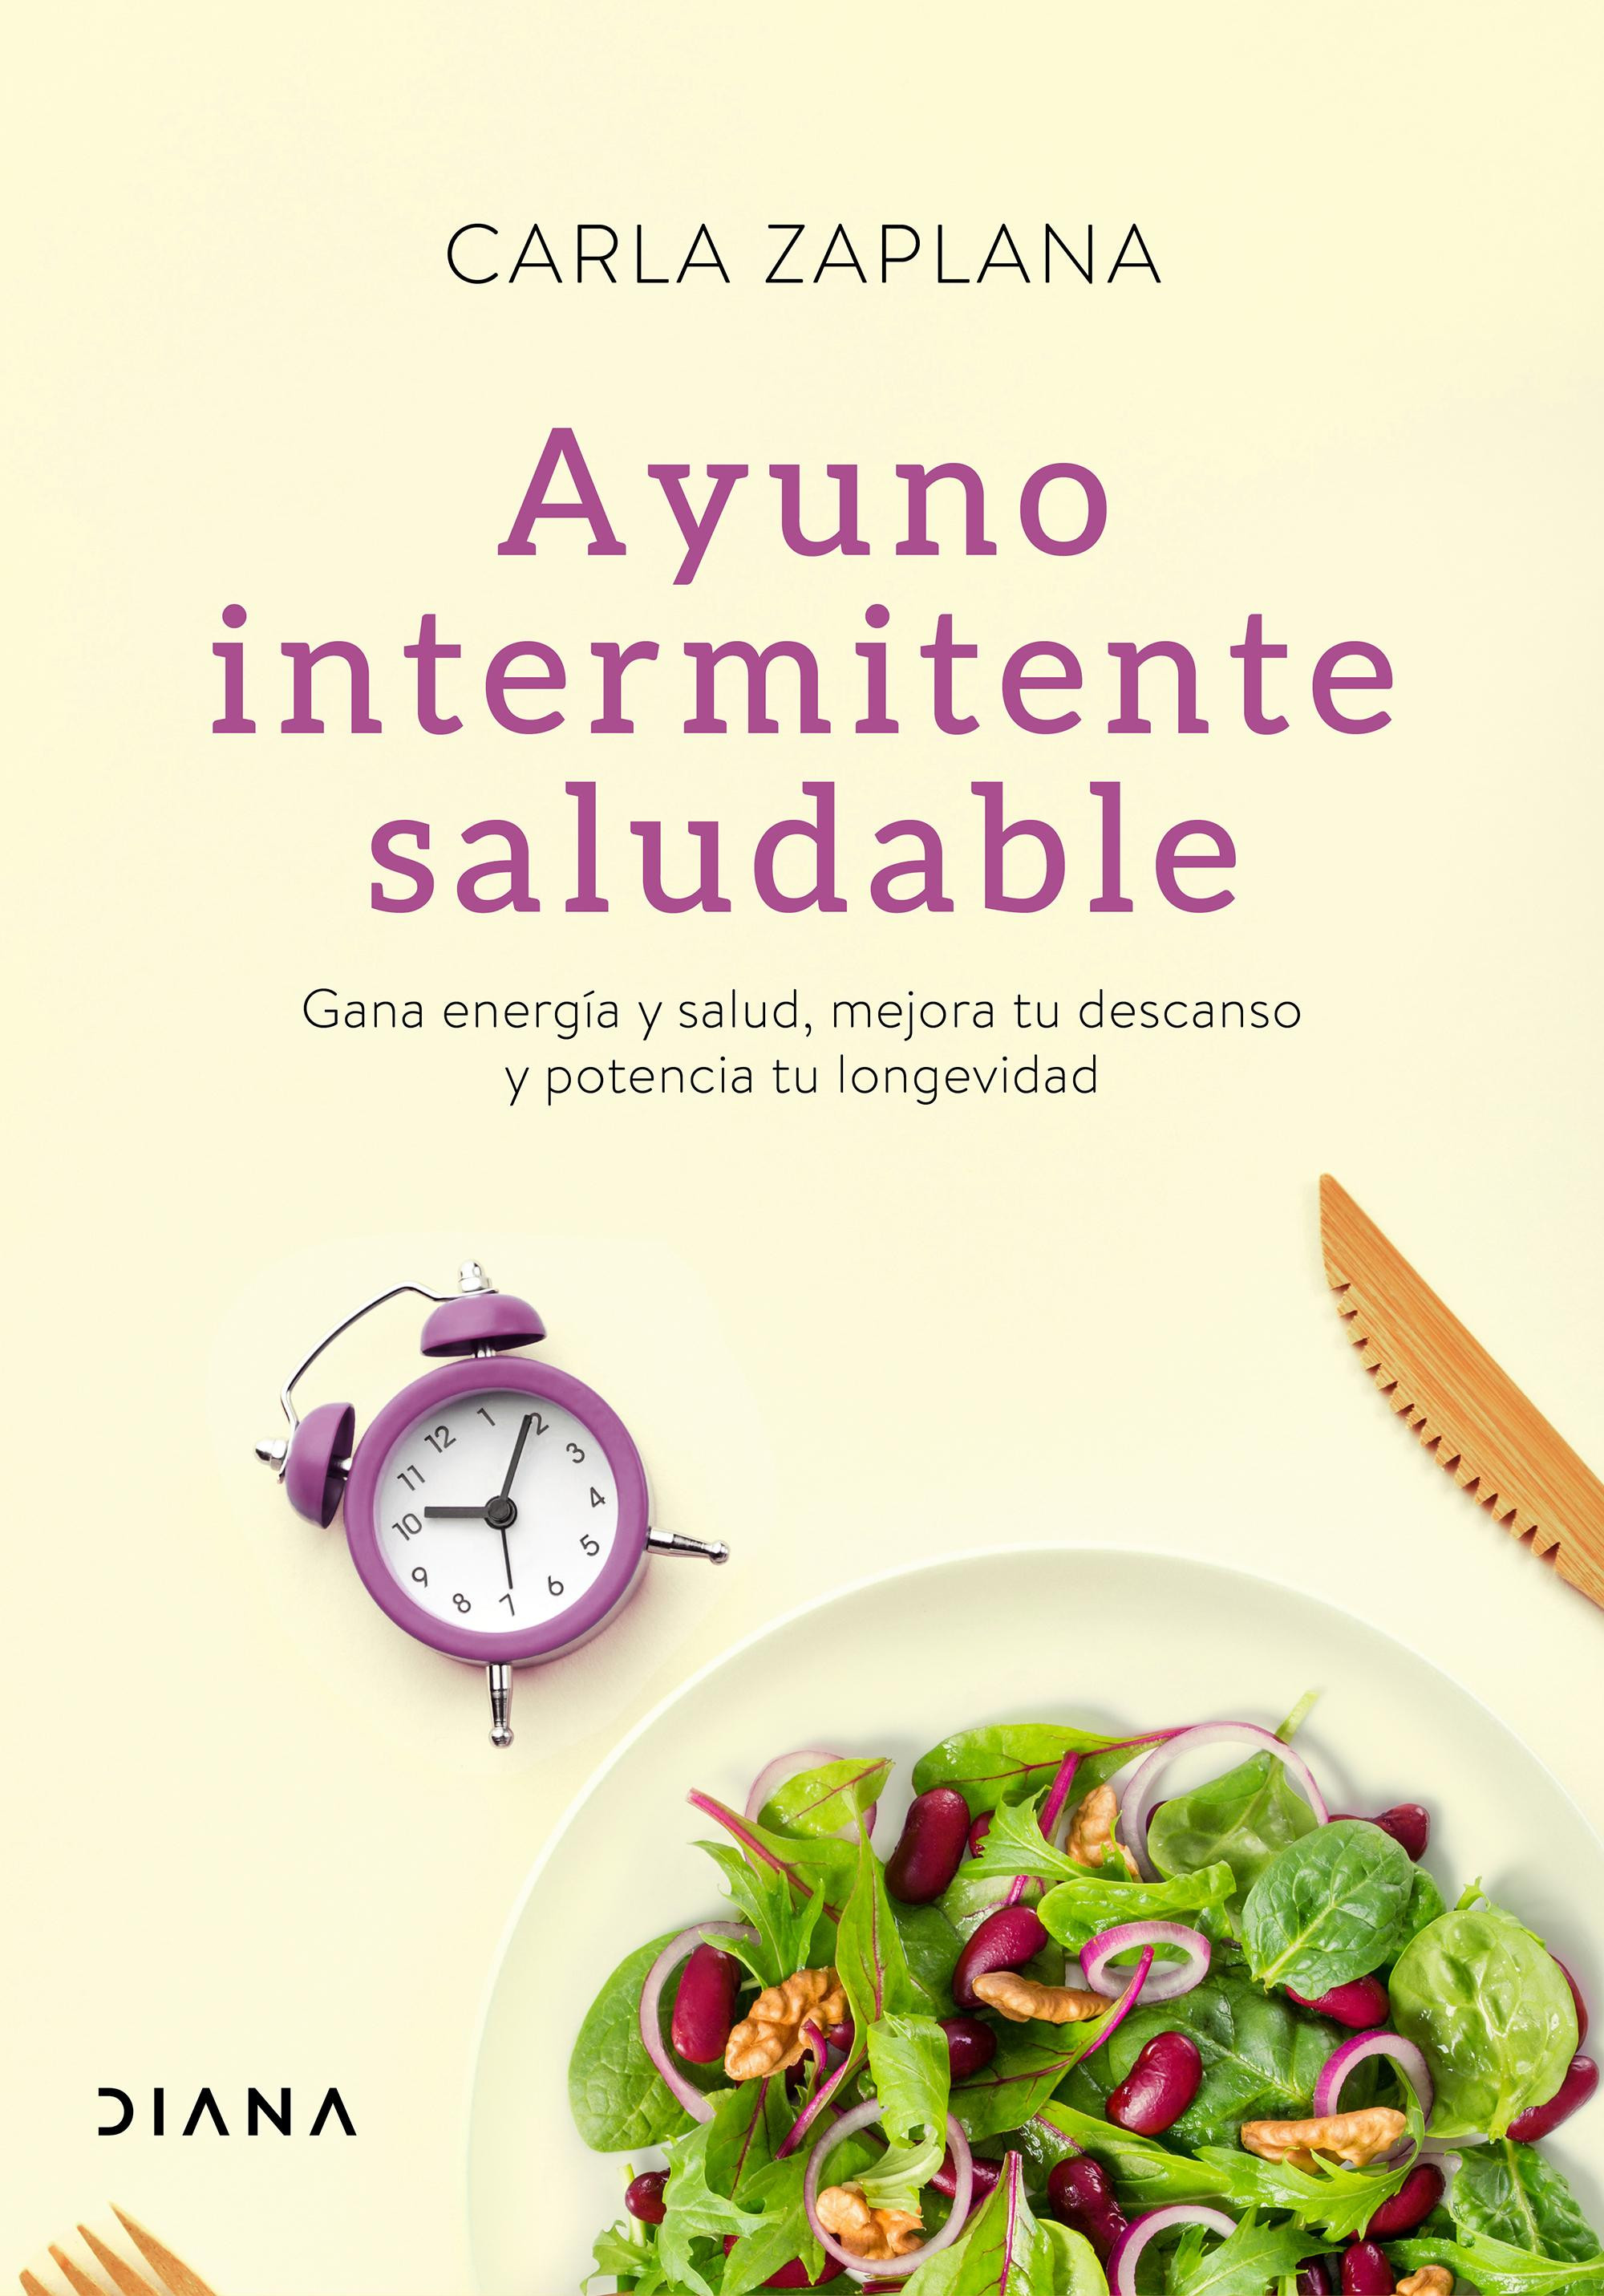 El libro 'Ayuno intermitente saludable', de Carla Zaplana / PLANETA